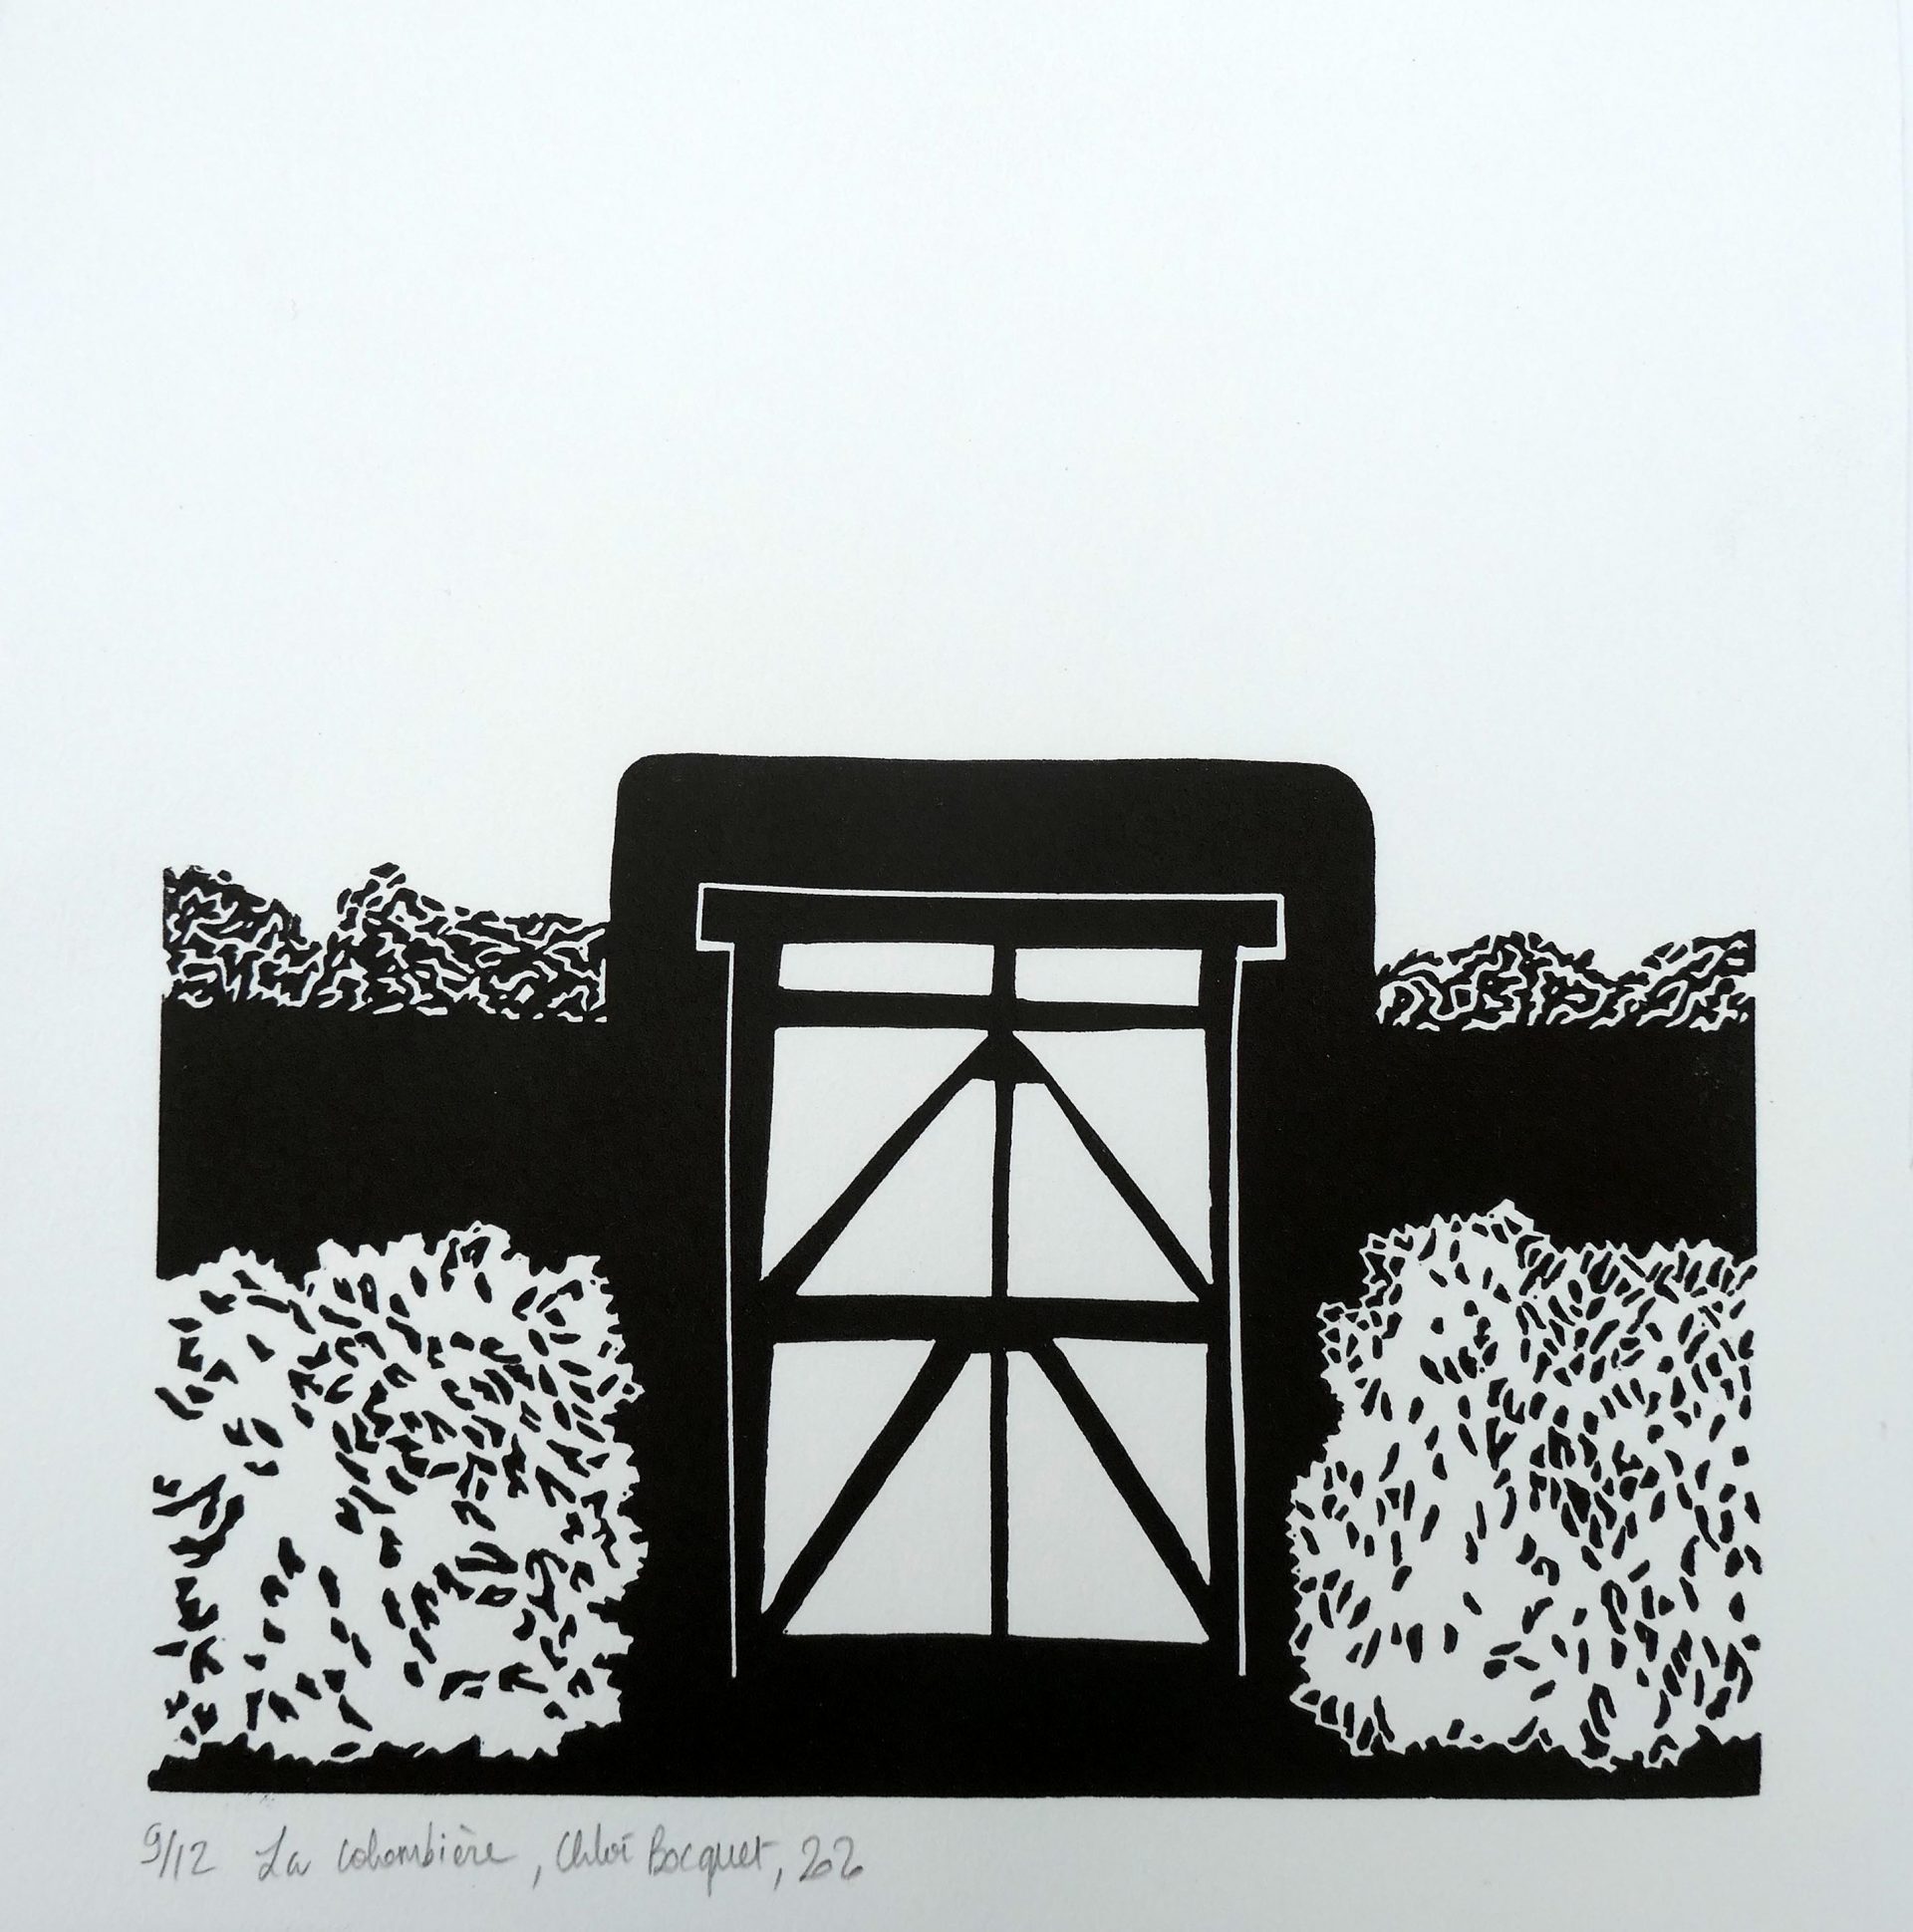 La Colombière, 2020, linocut, image and paper size 25x25 cm, edition of 12